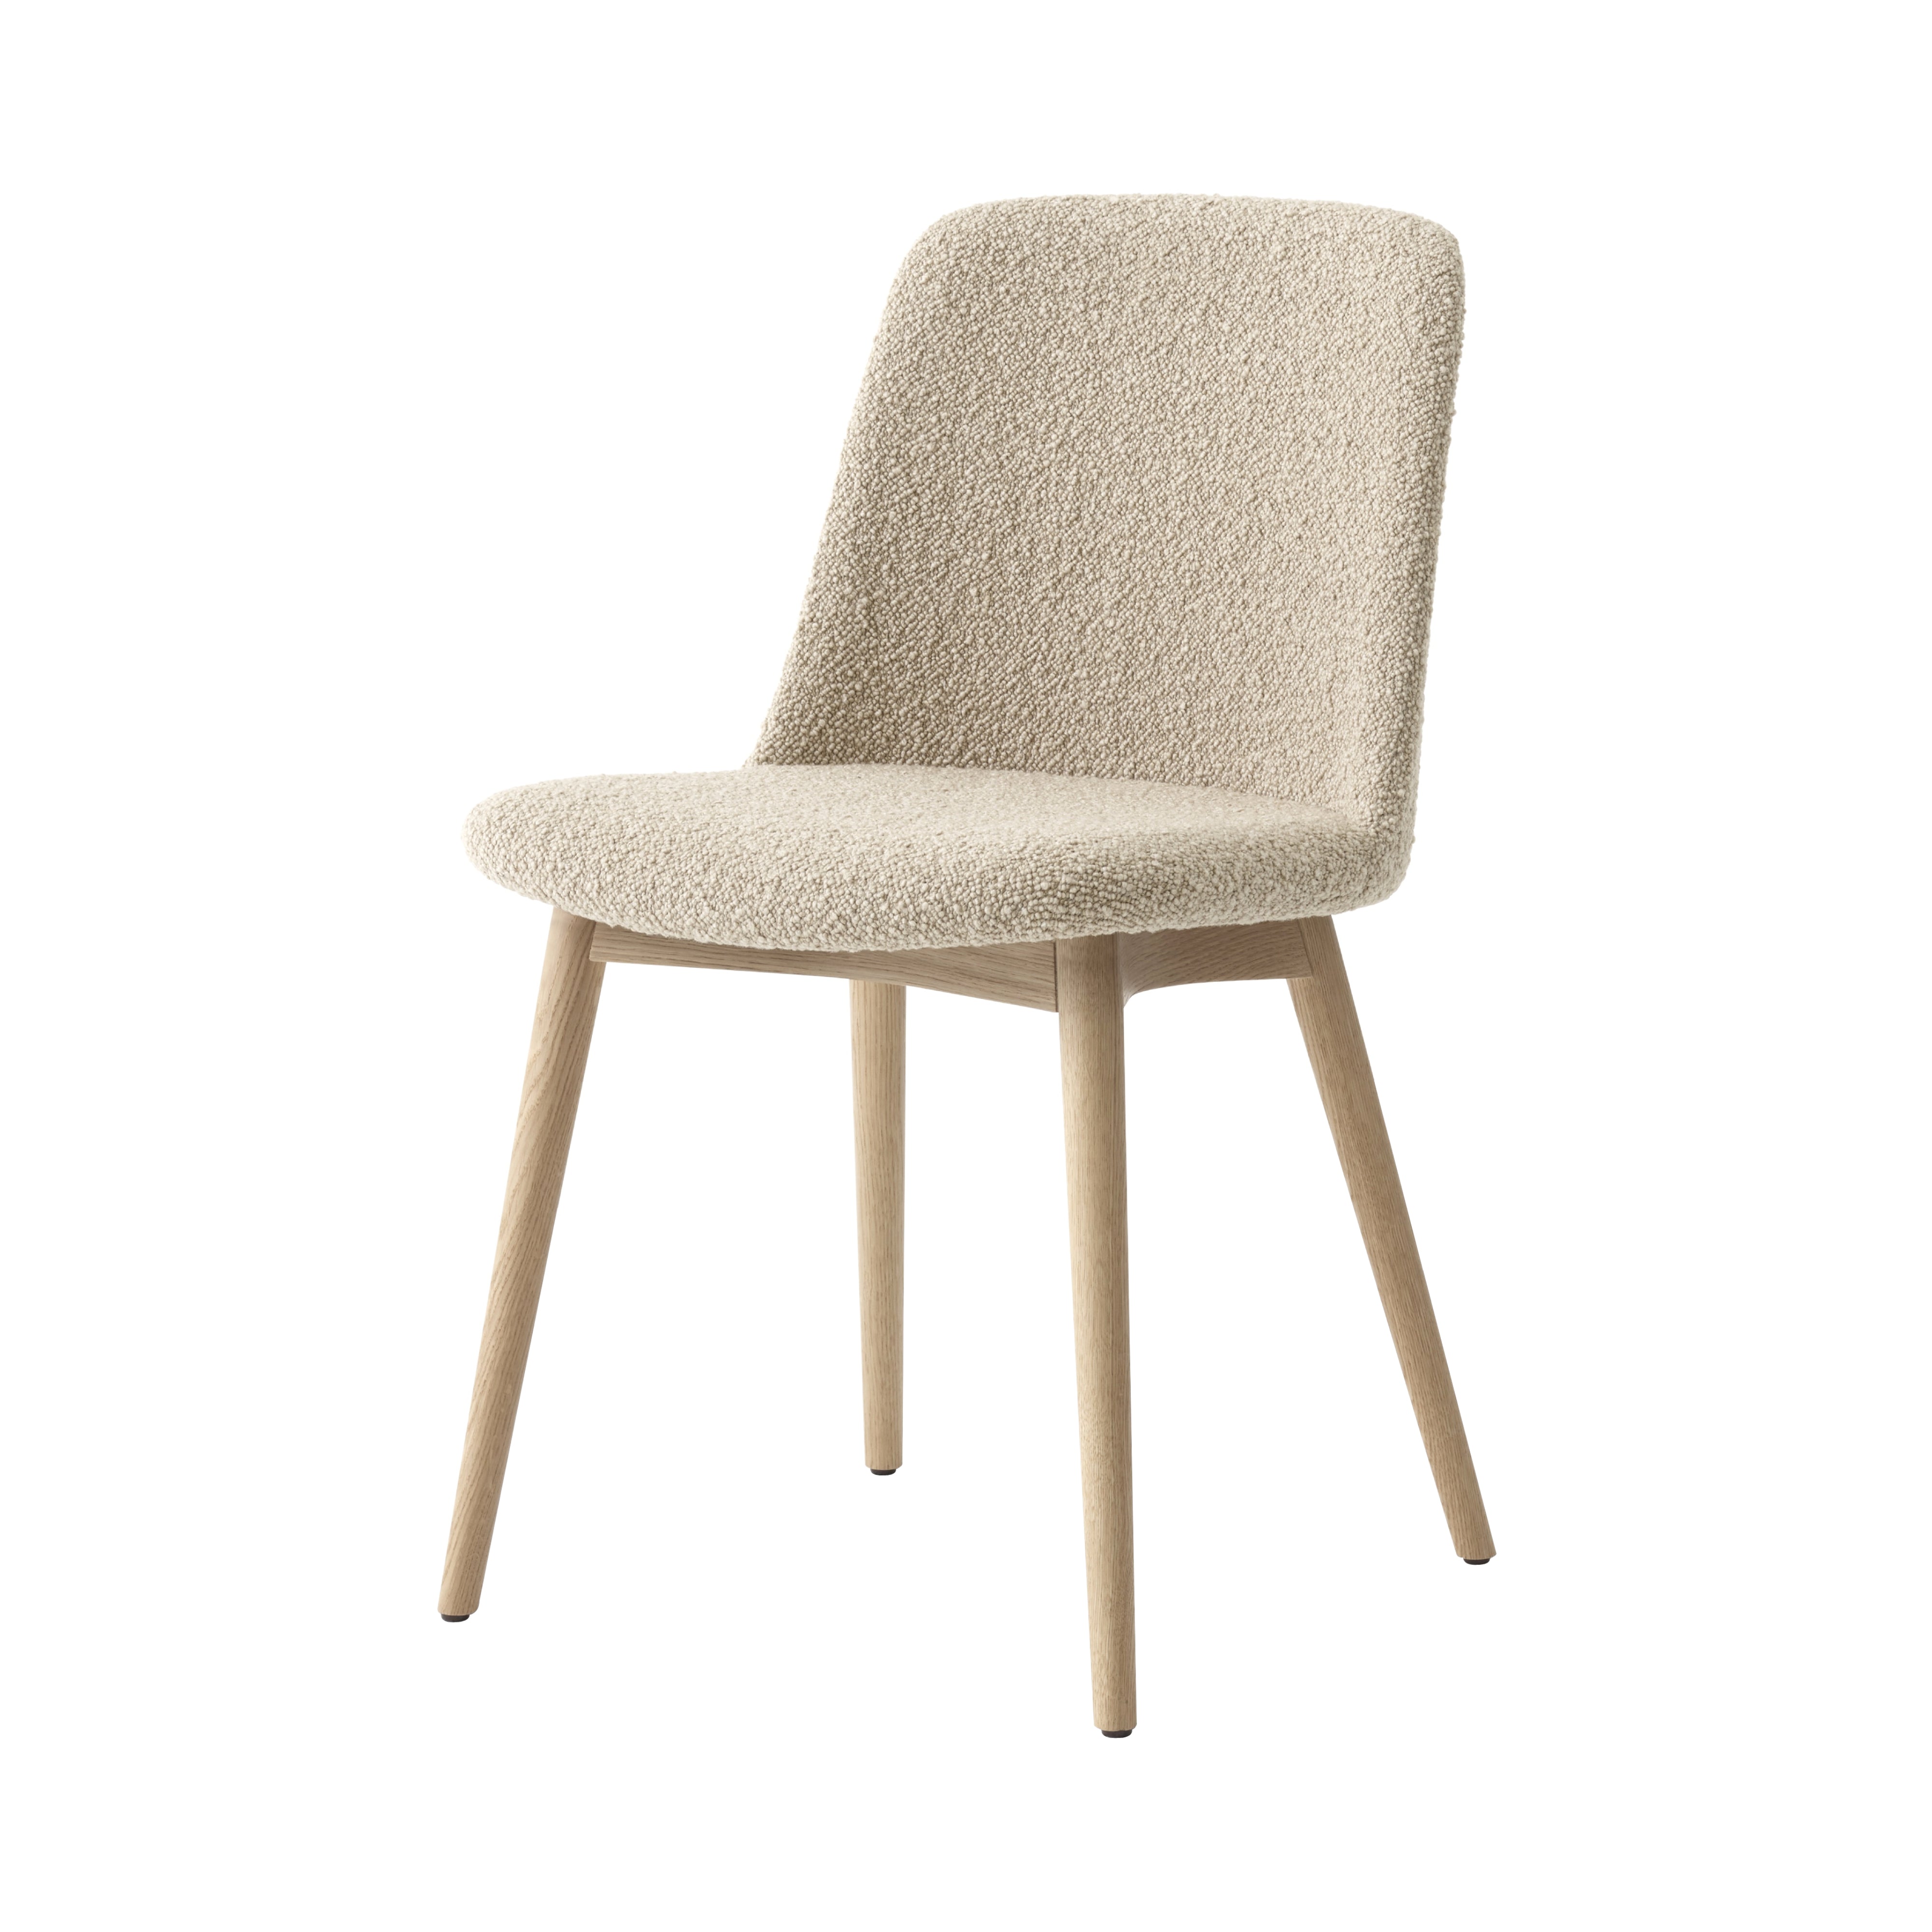 Rely Chair HW73: Oak